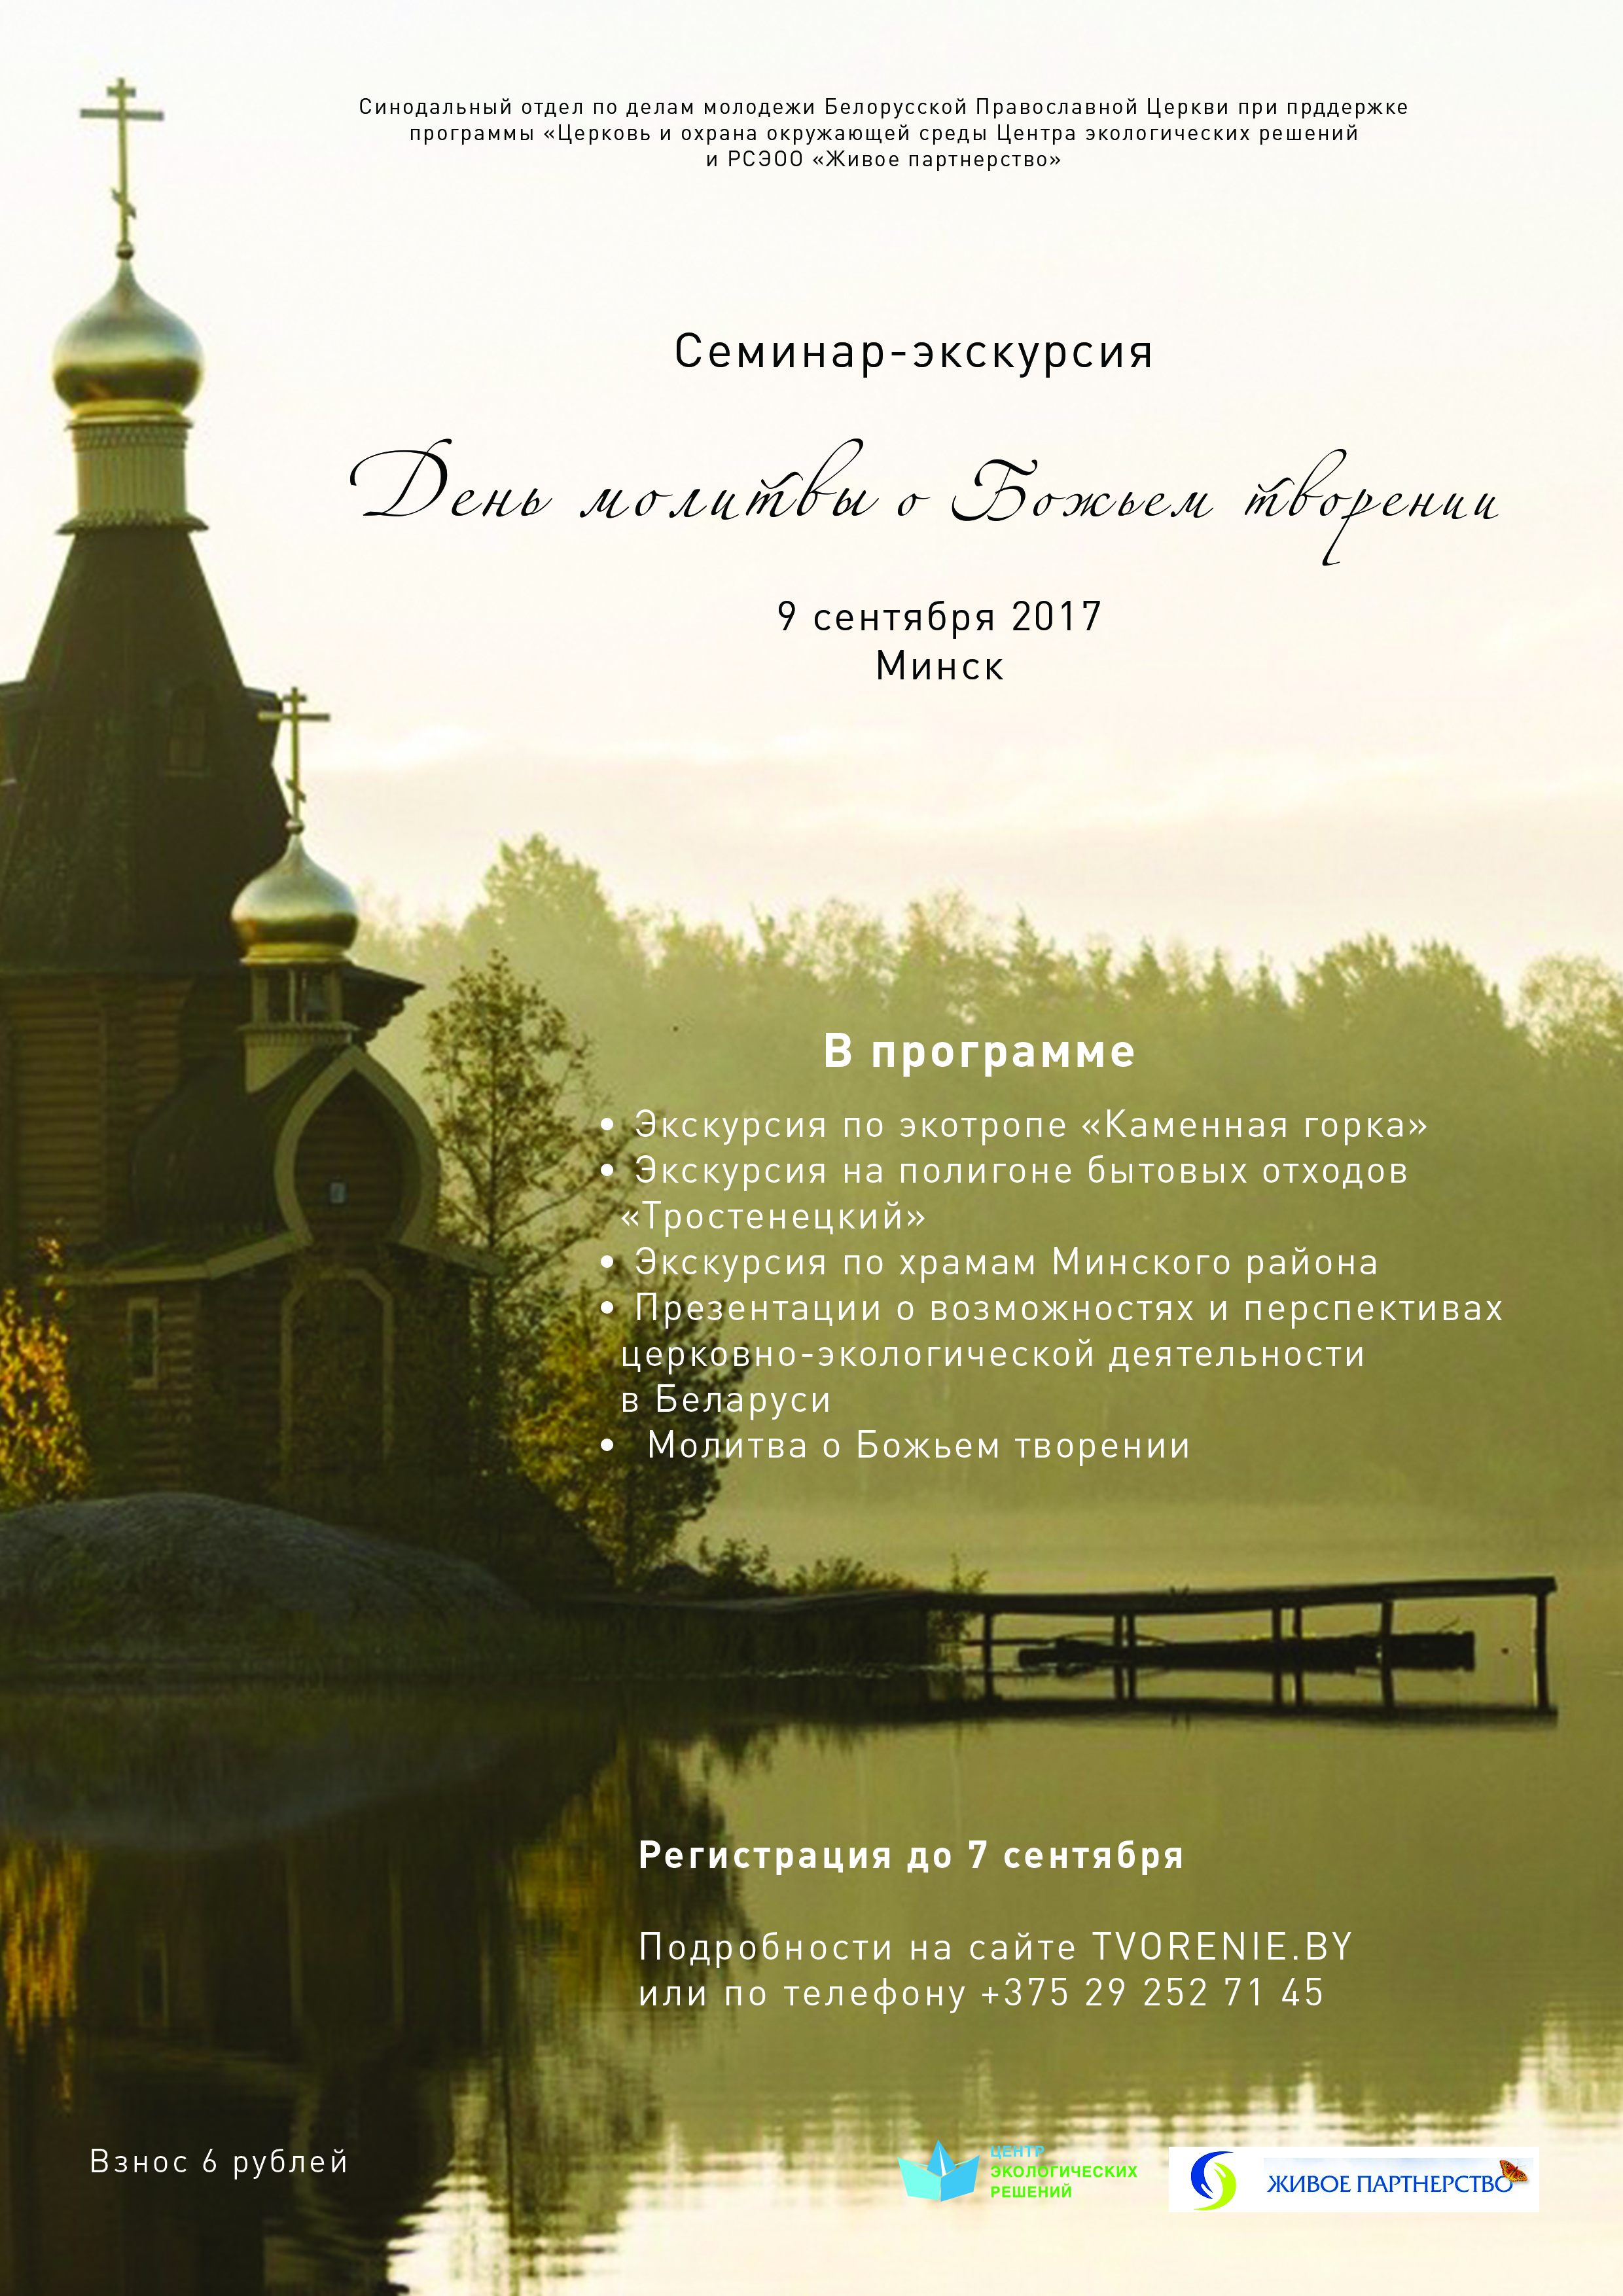 В Минске пройдет семинар-экскурсия «День молитвы о Божьем творении»